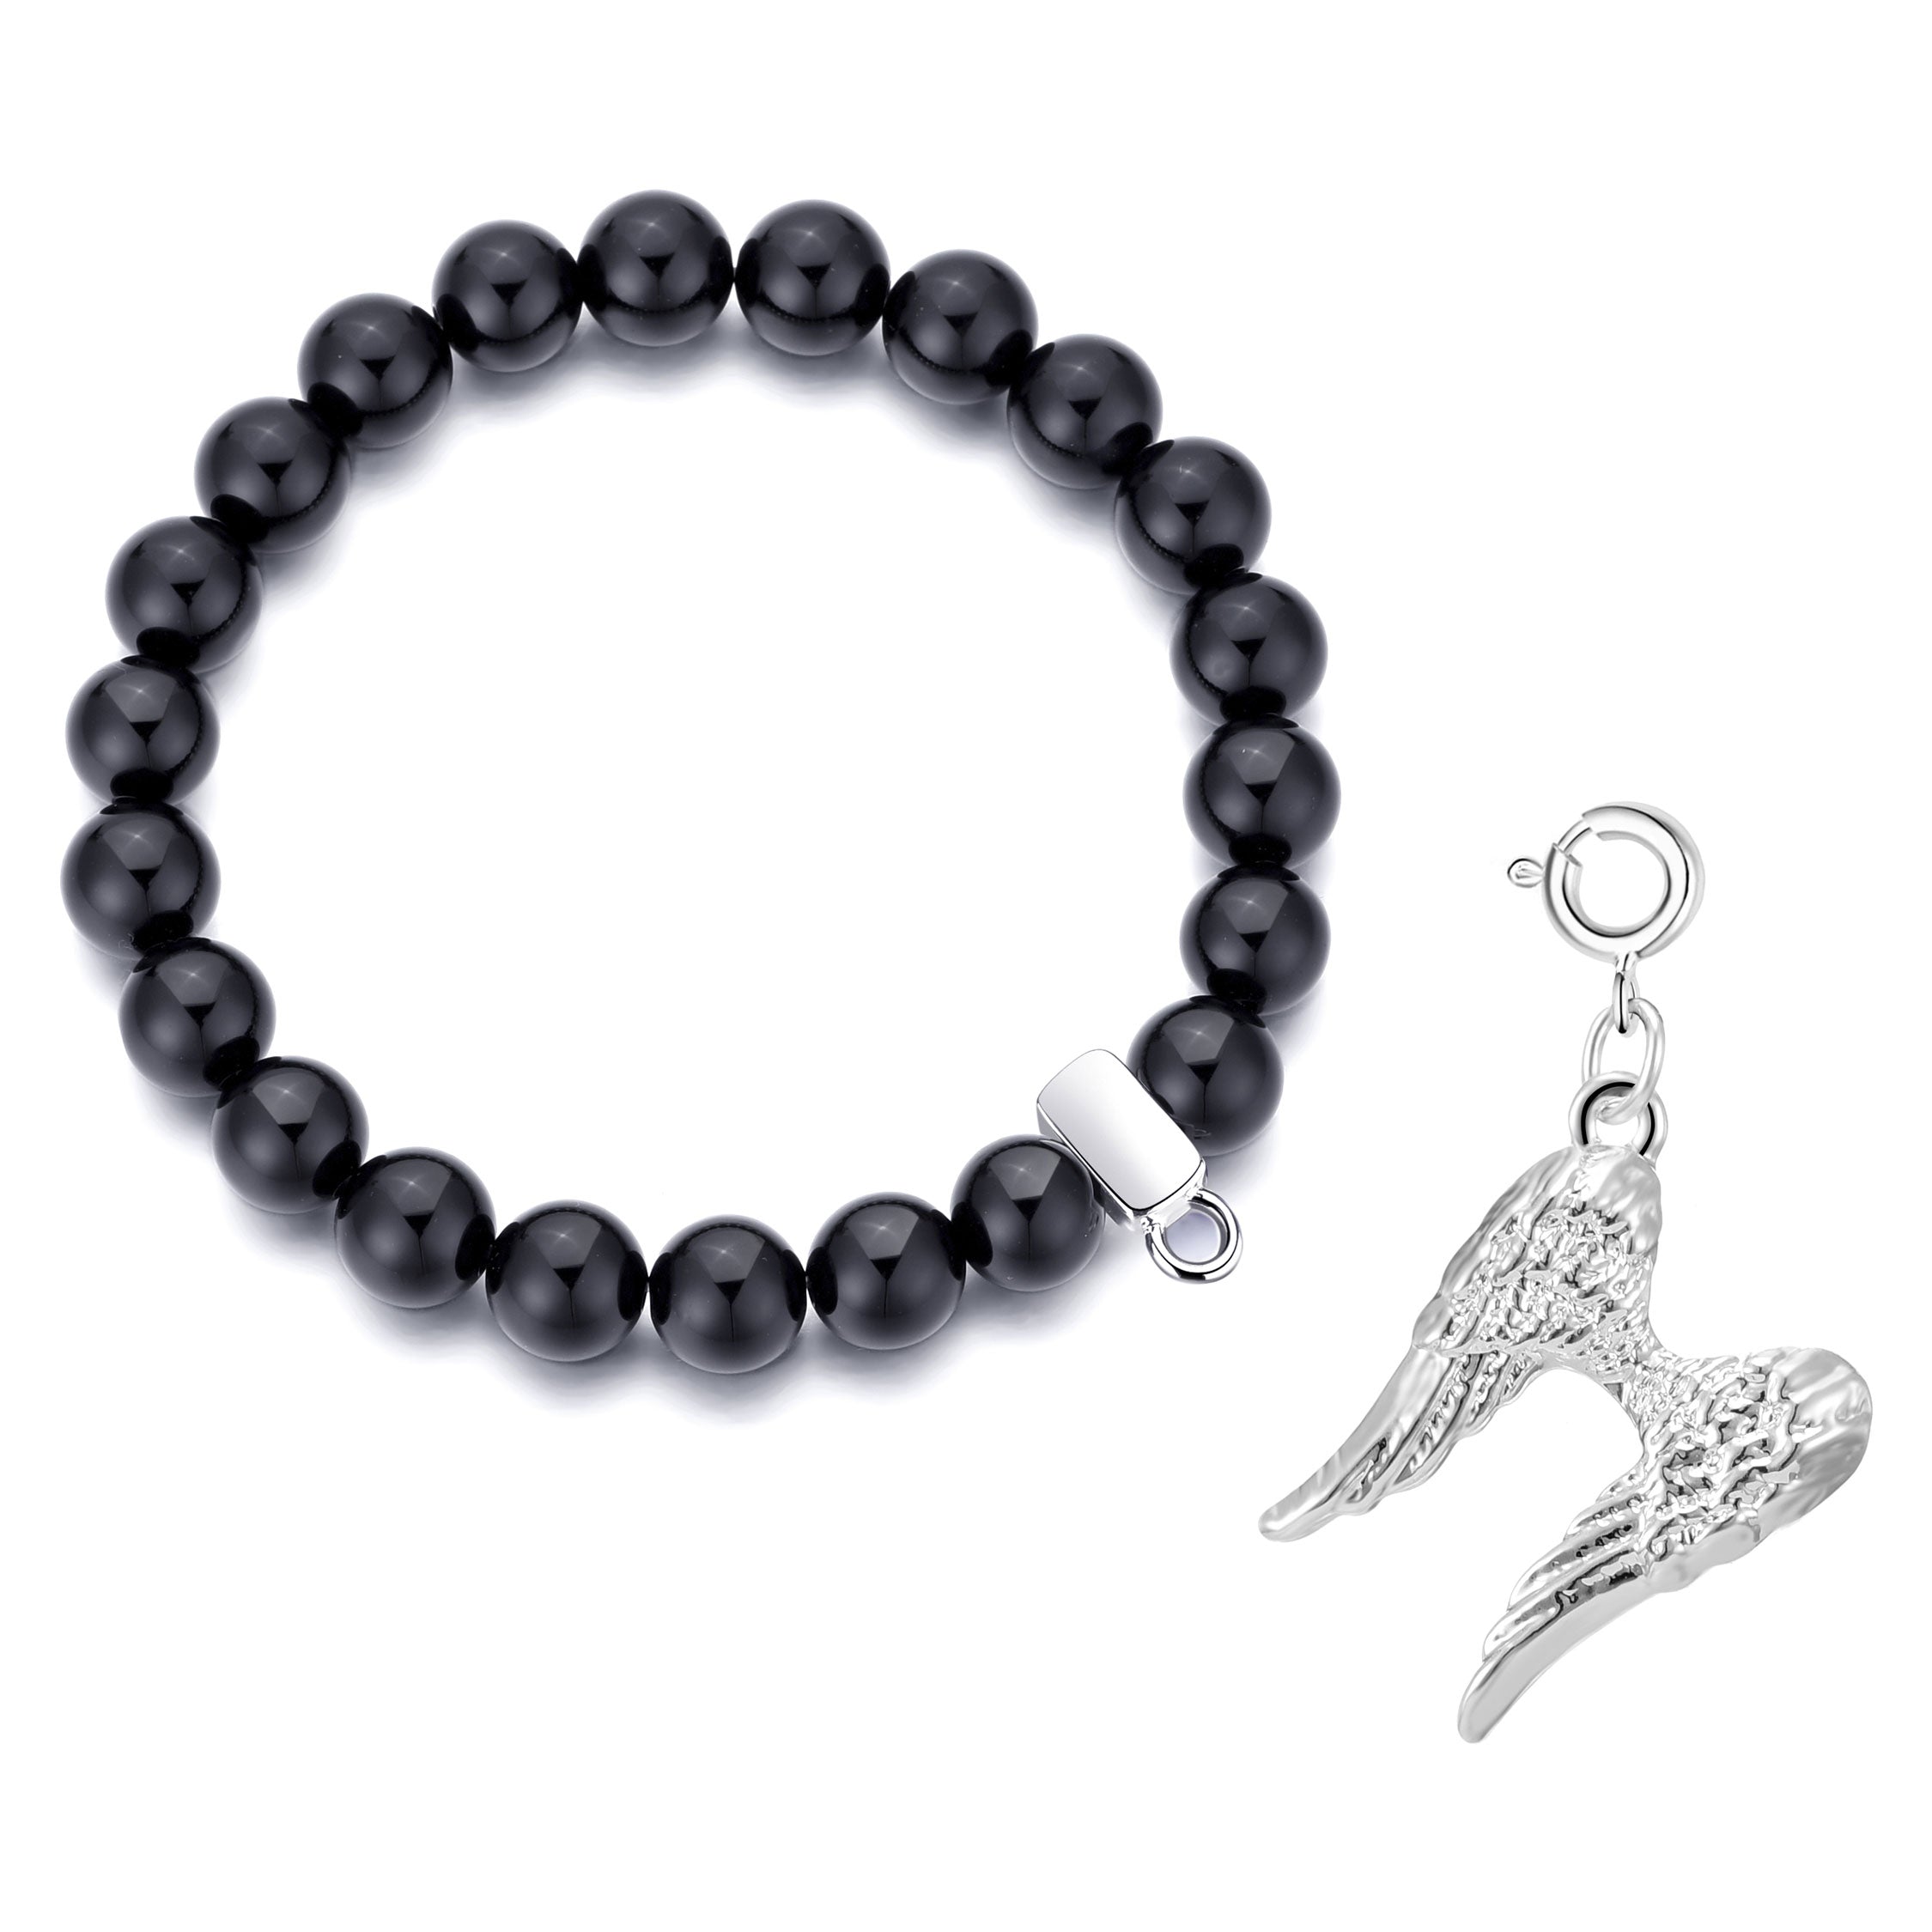 Black Onyx Gemstone Stretch Bracelet with Charm Created with Zircondia® Crystals